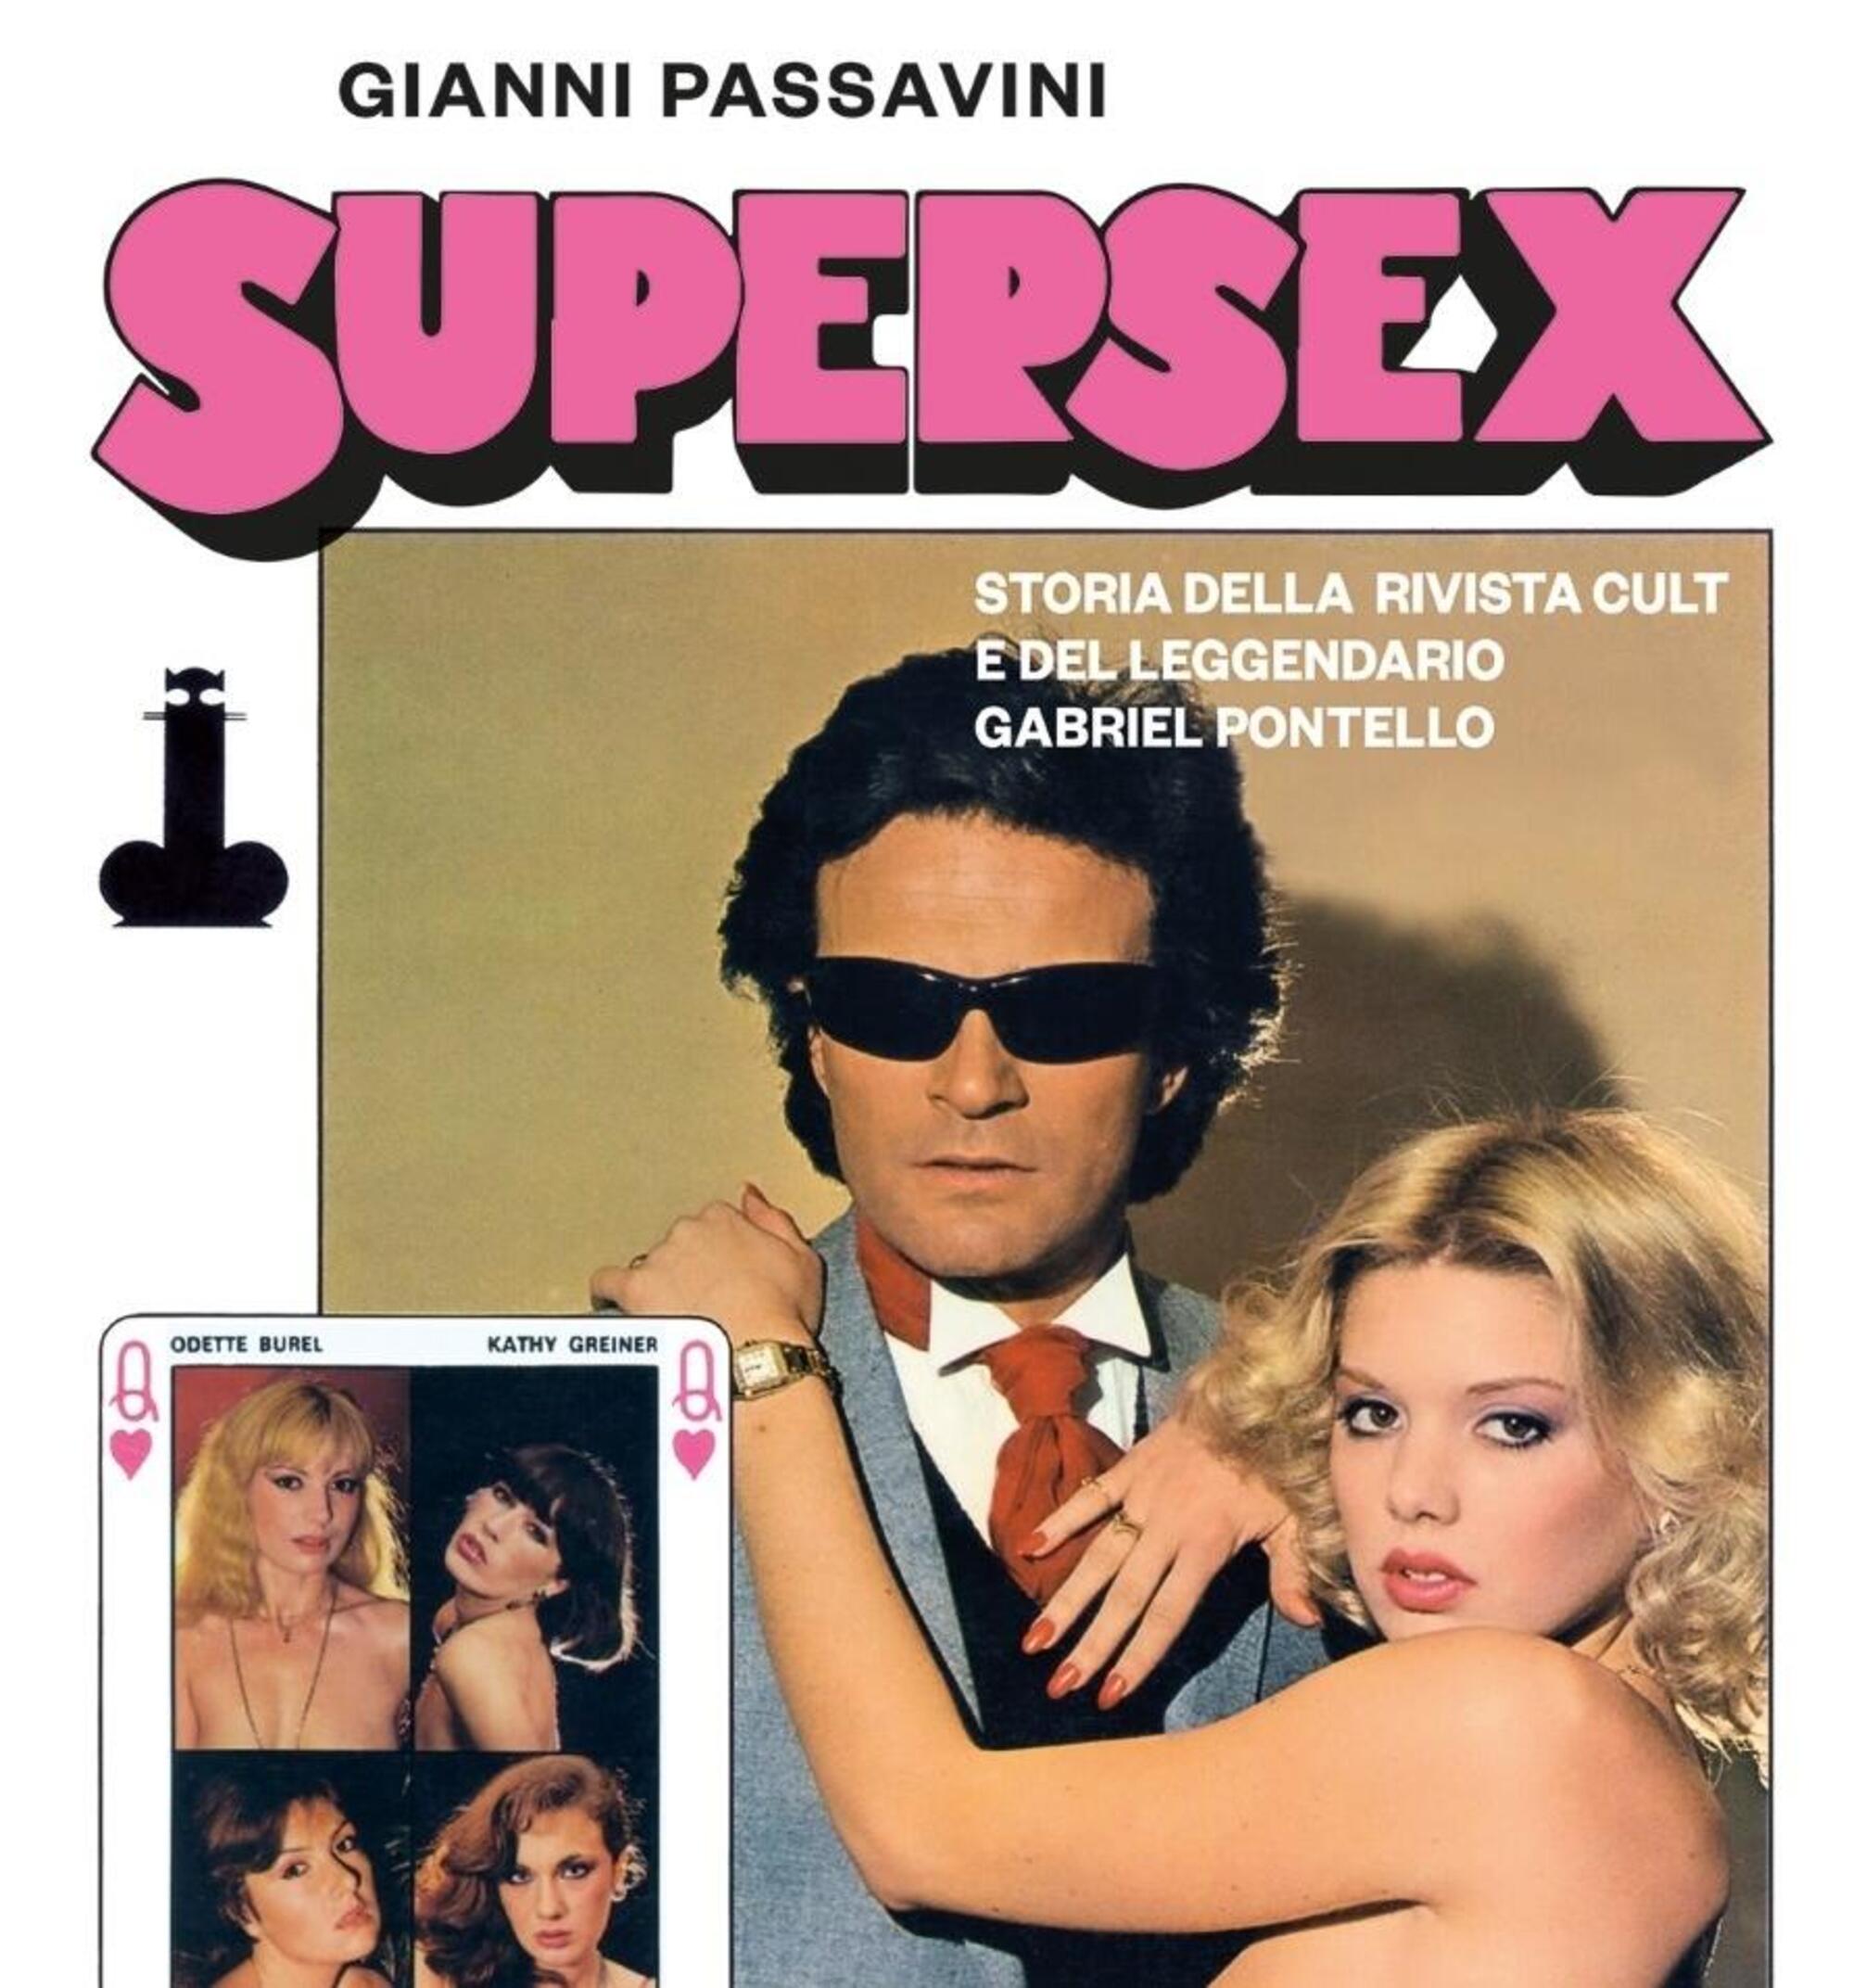 La copertina di Supersex di Gianni Passavini, che riprende in toto la rivista cult